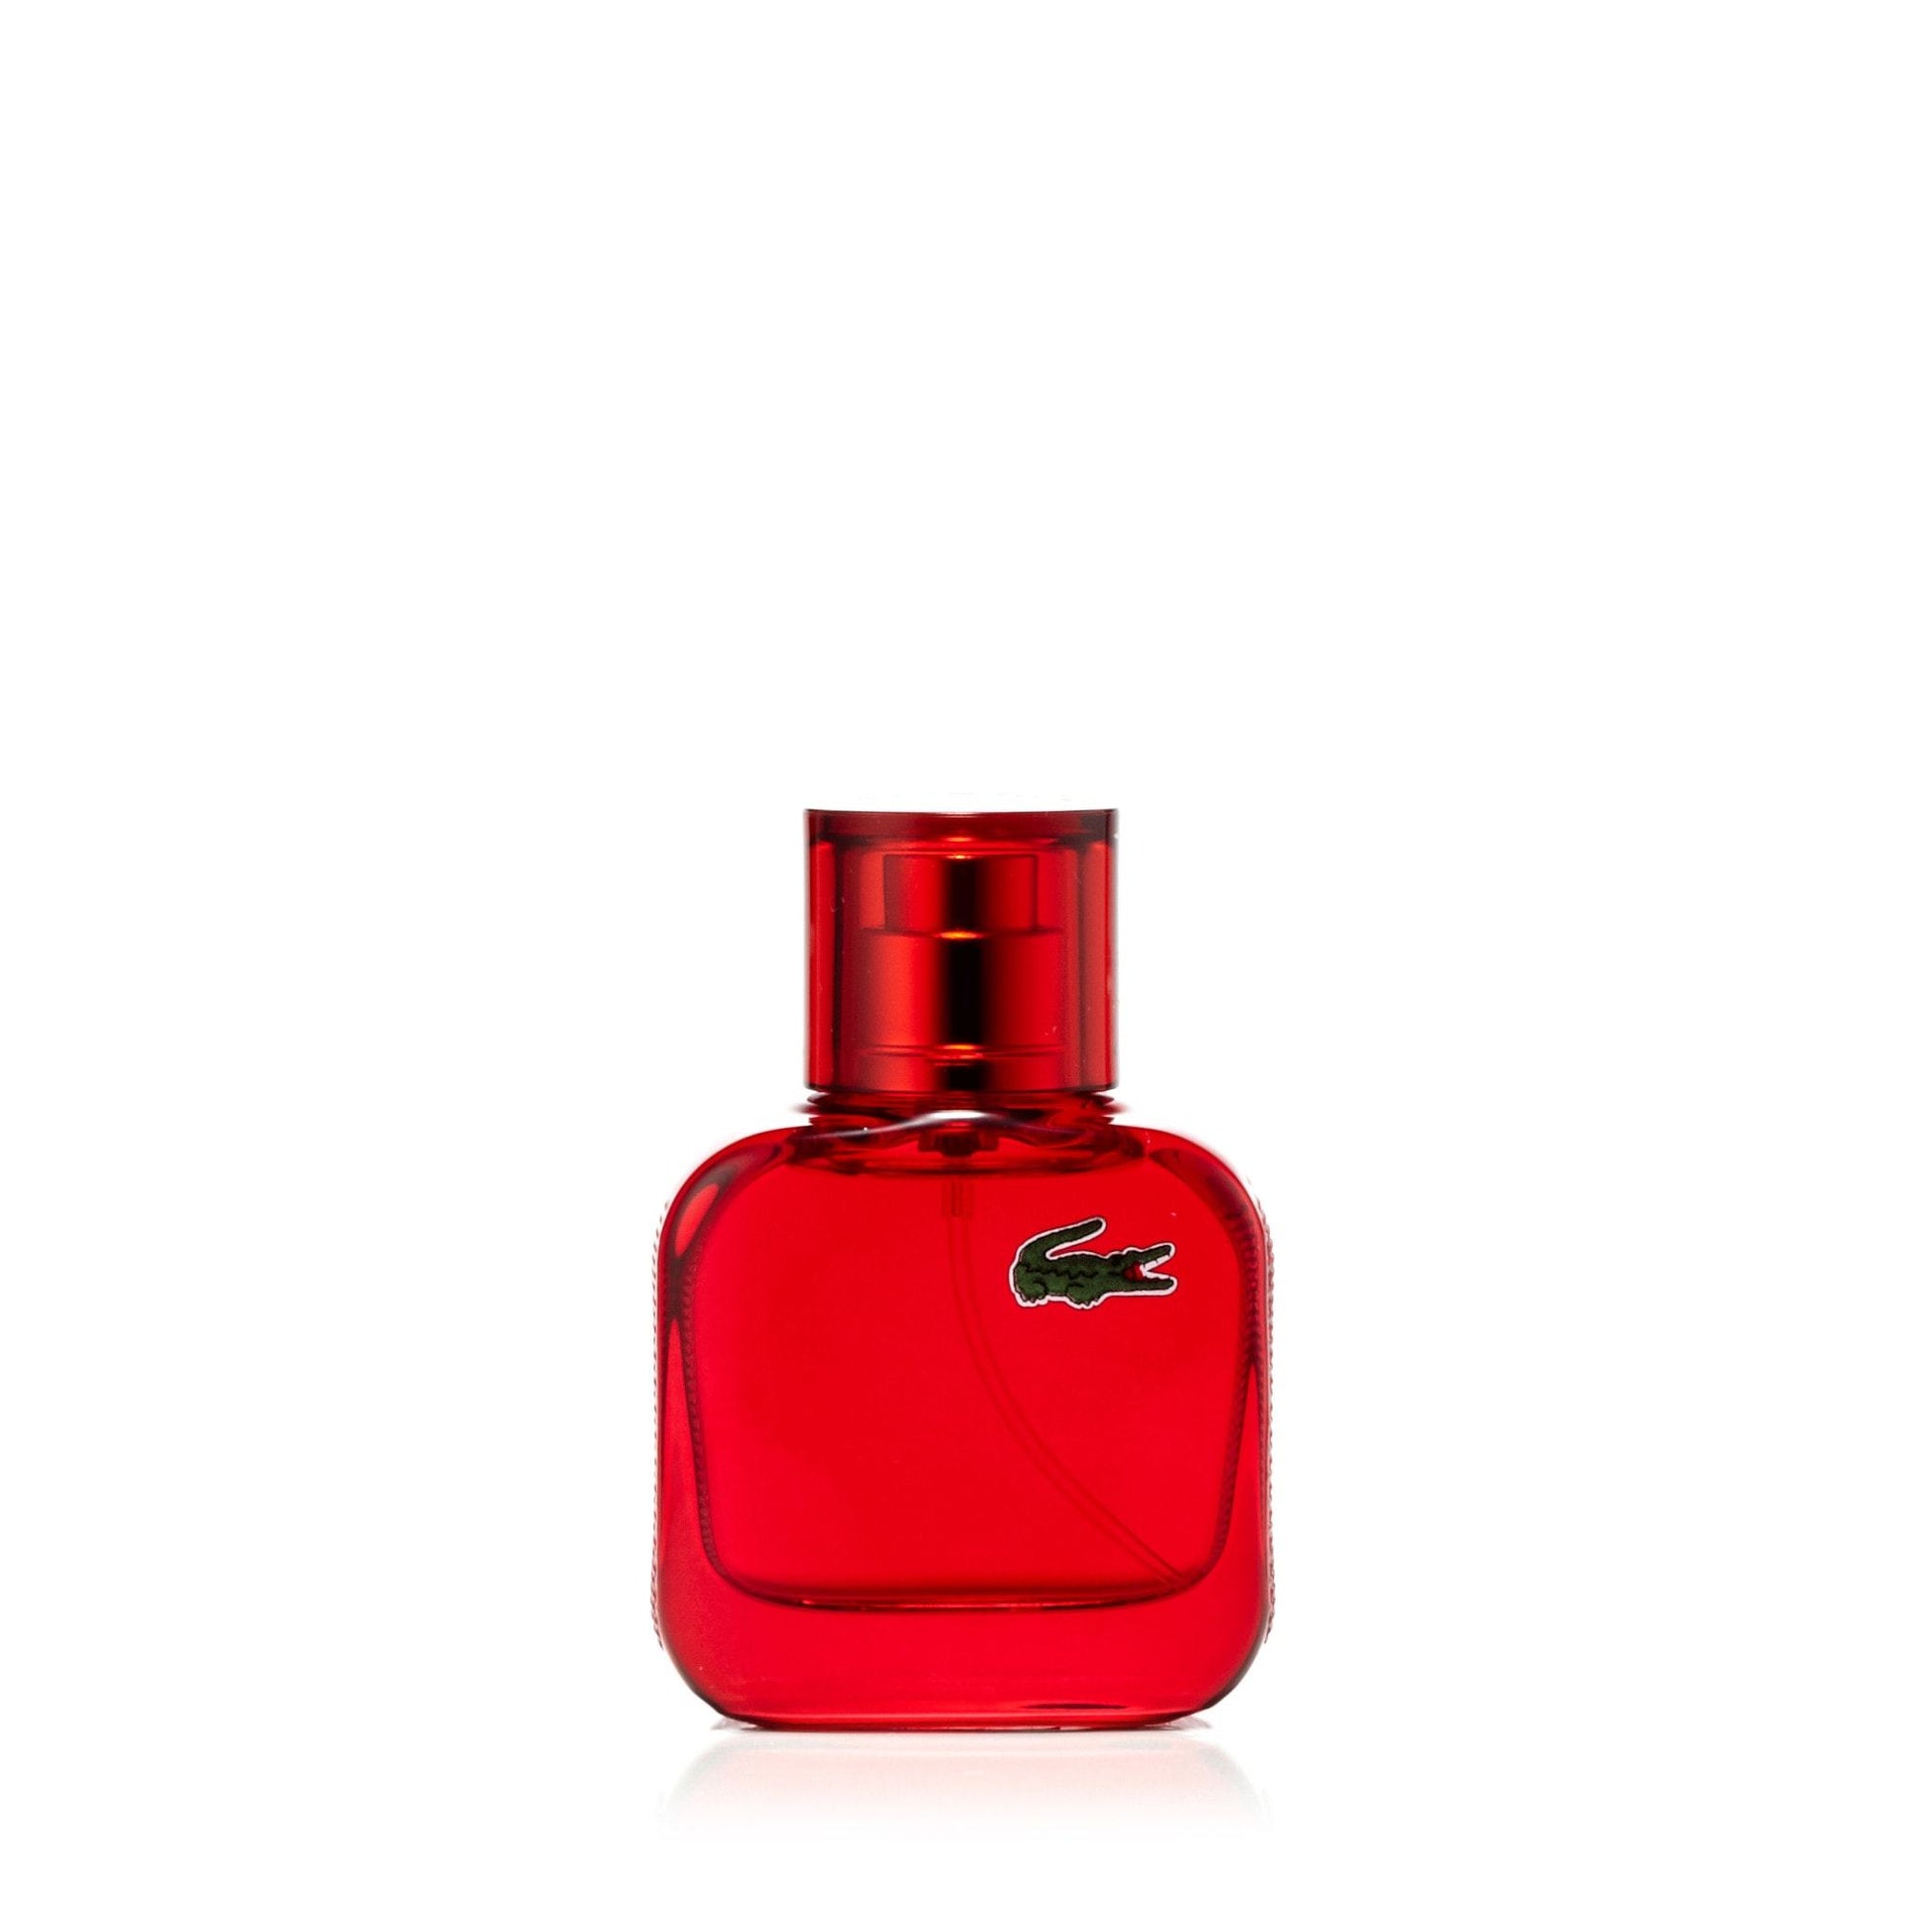 L.12.12 Rouge Eau de Toilette Spray for Men by Lacoste, Product image 2